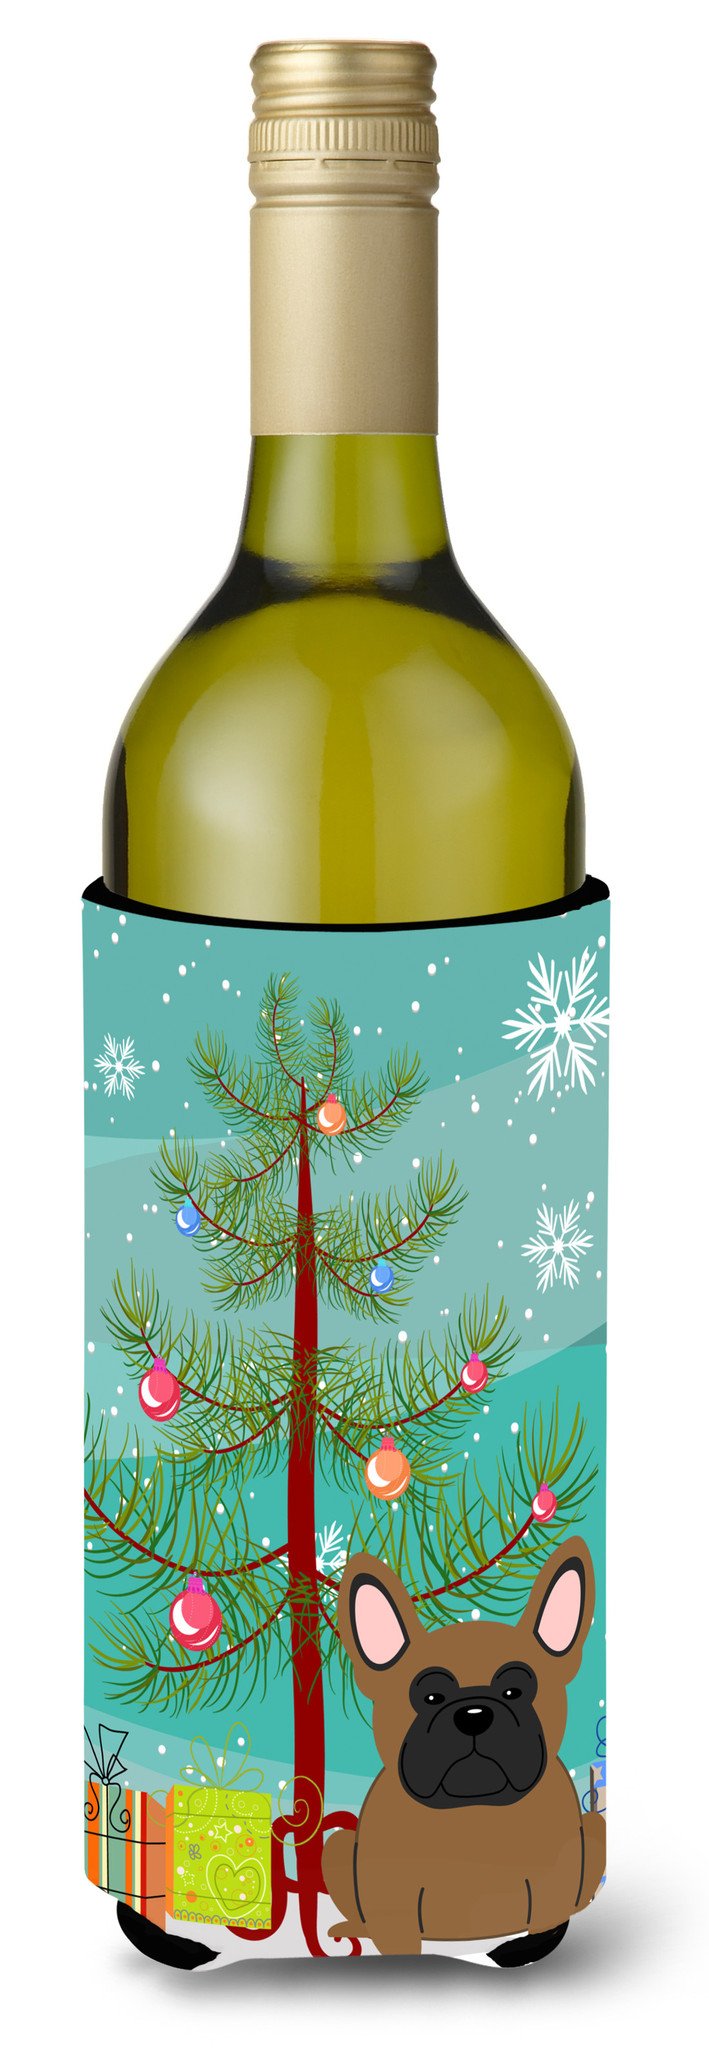 Merry Christmas Tree French Bulldog Brown Wine Bottle Beverge Insulator Hugger BB4138LITERK by Caroline's Treasures